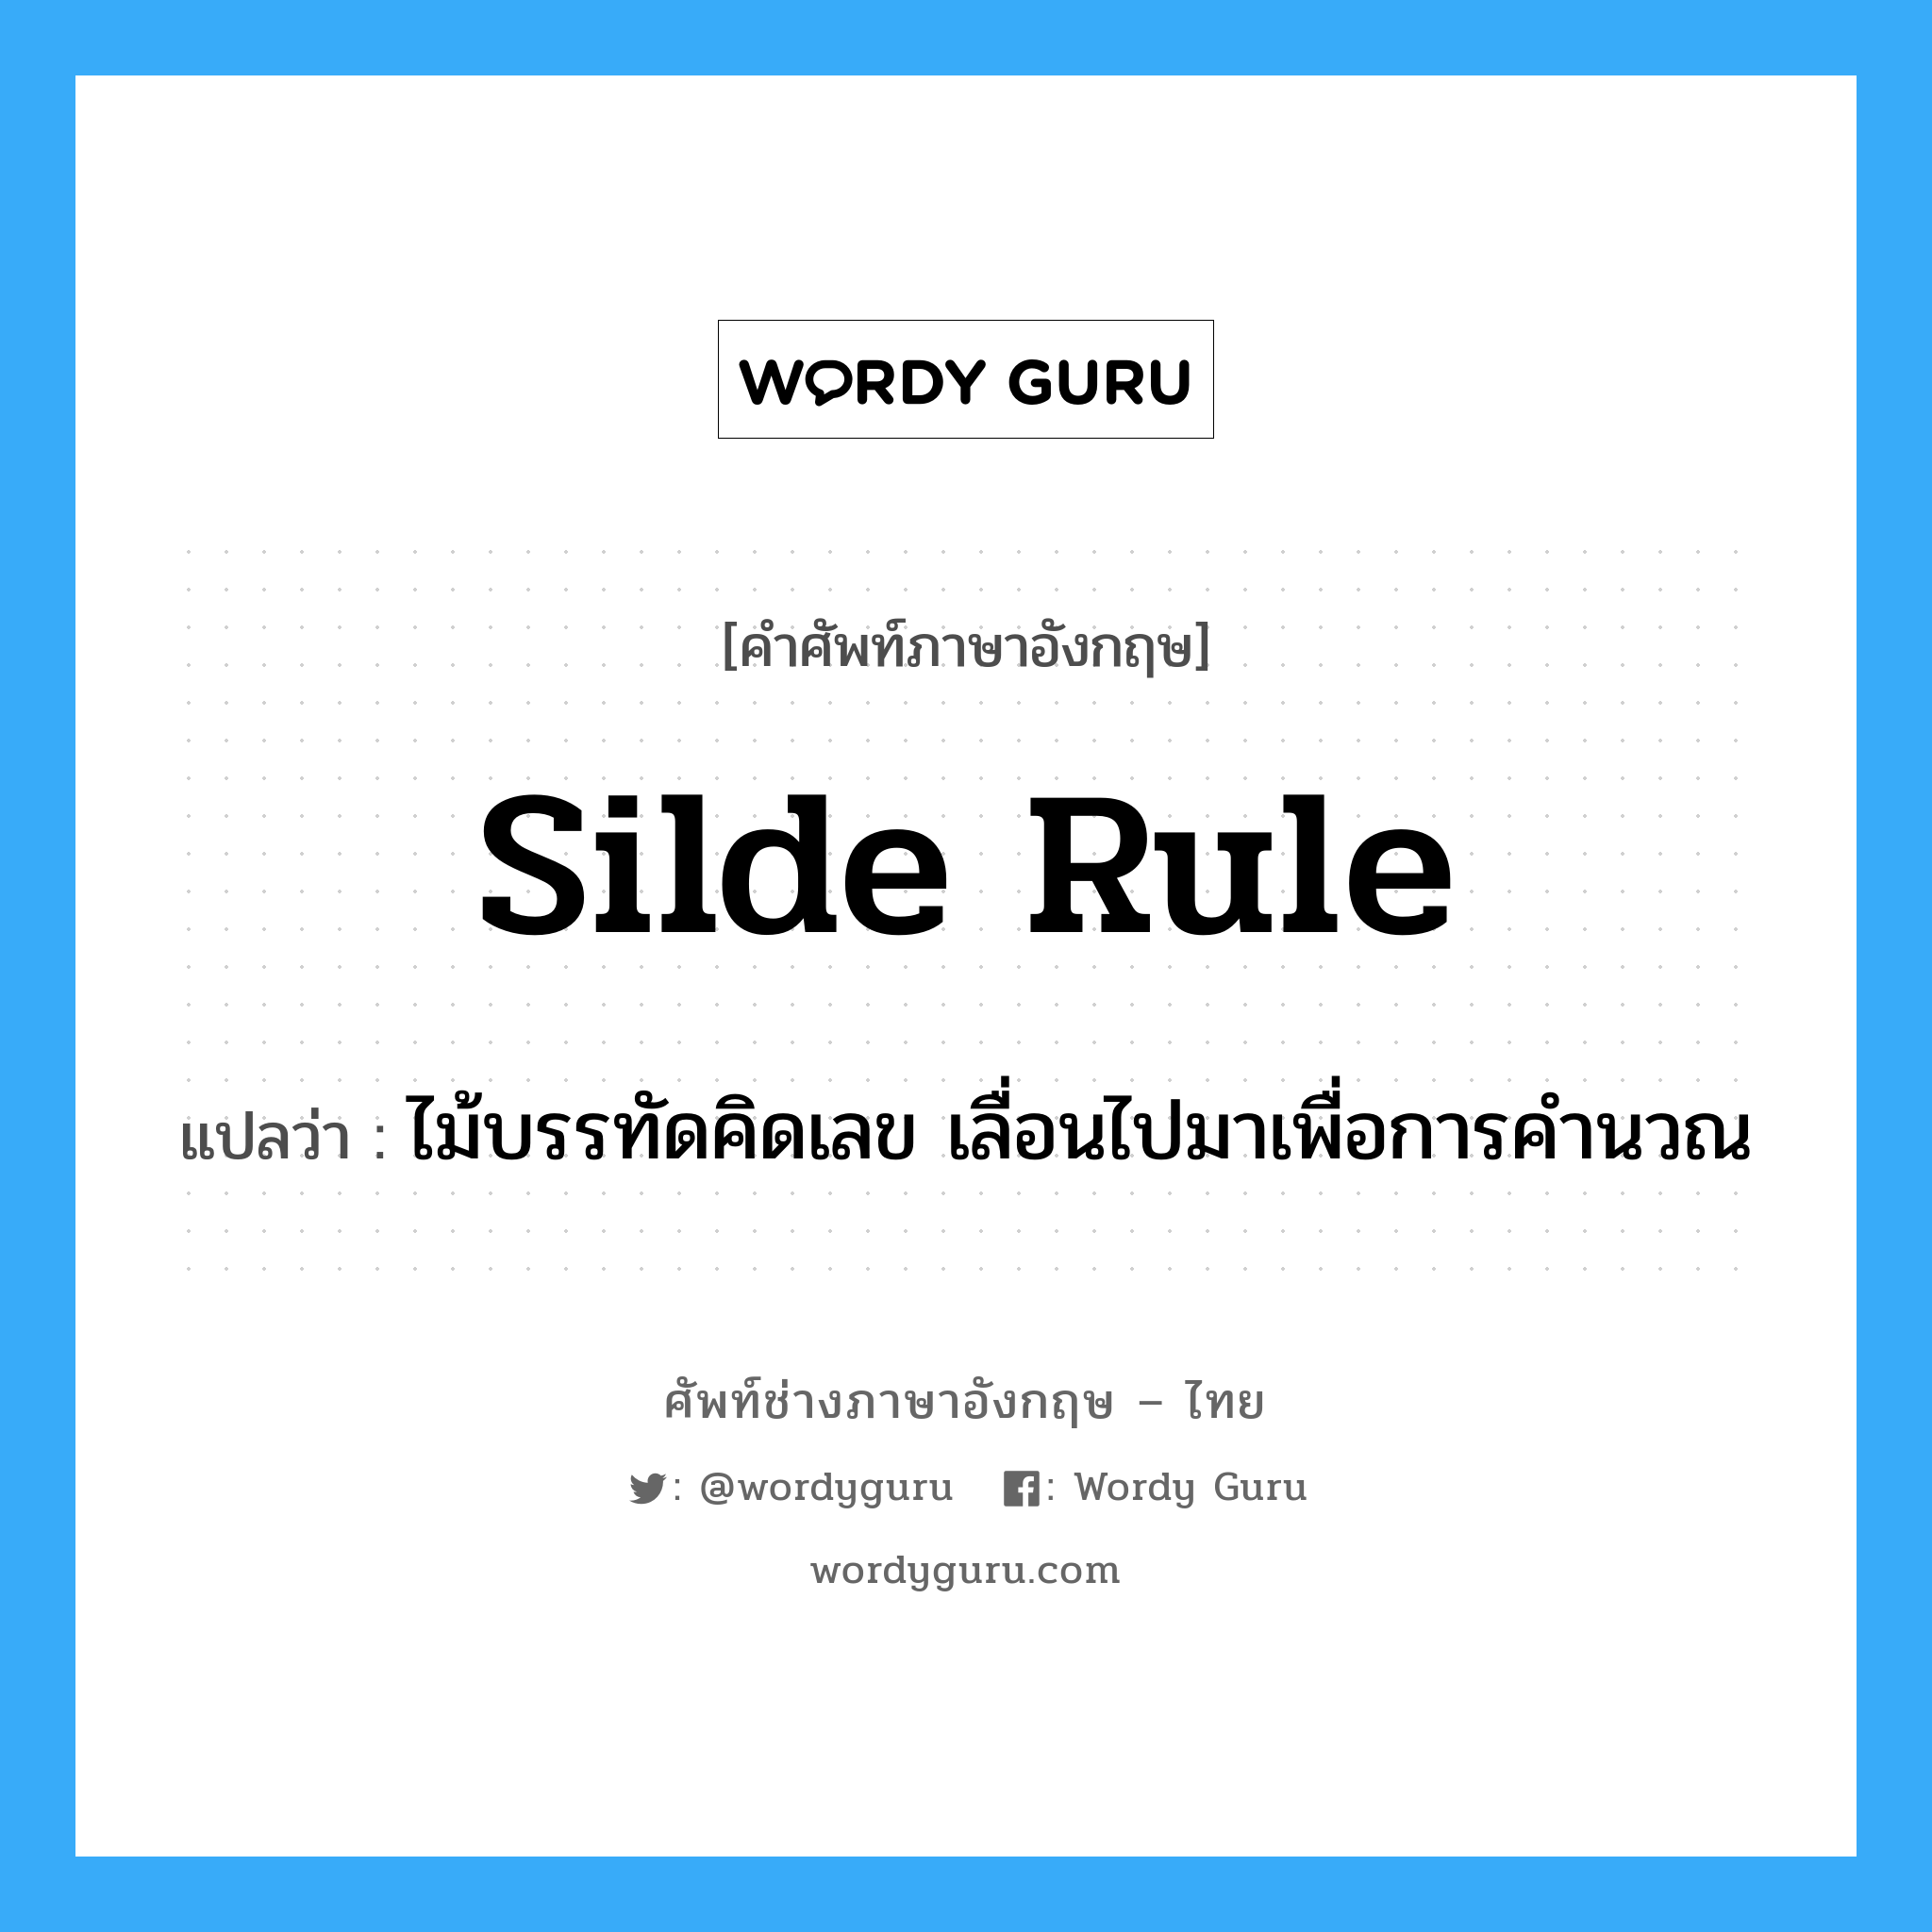 silde rule แปลว่า?, คำศัพท์ช่างภาษาอังกฤษ - ไทย silde rule คำศัพท์ภาษาอังกฤษ silde rule แปลว่า ไม้บรรทัดคิดเลข เลื่อนไปมาเพื่อการคำนวณ